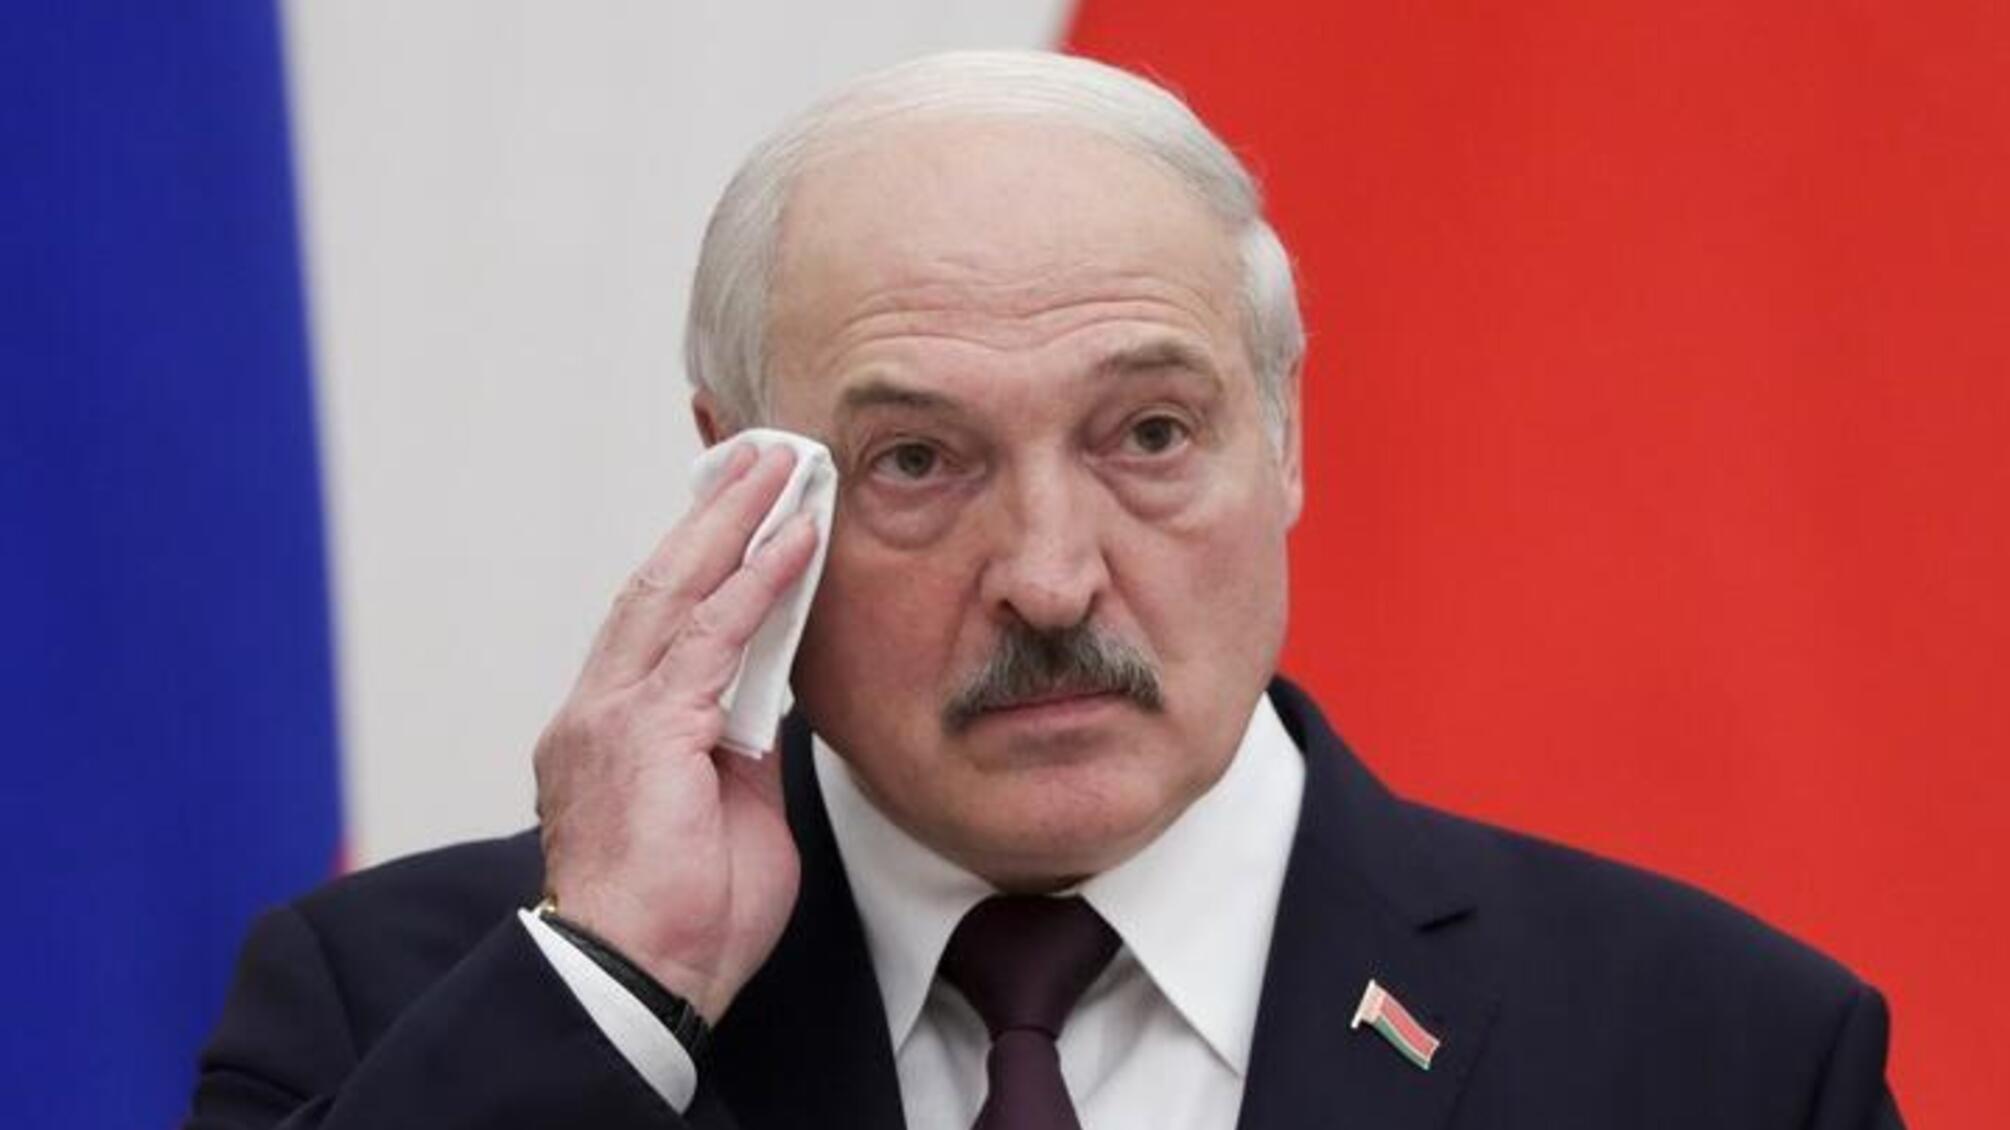 Лукашенко гарантирует себе неприкосновенность и привилегии после отставки